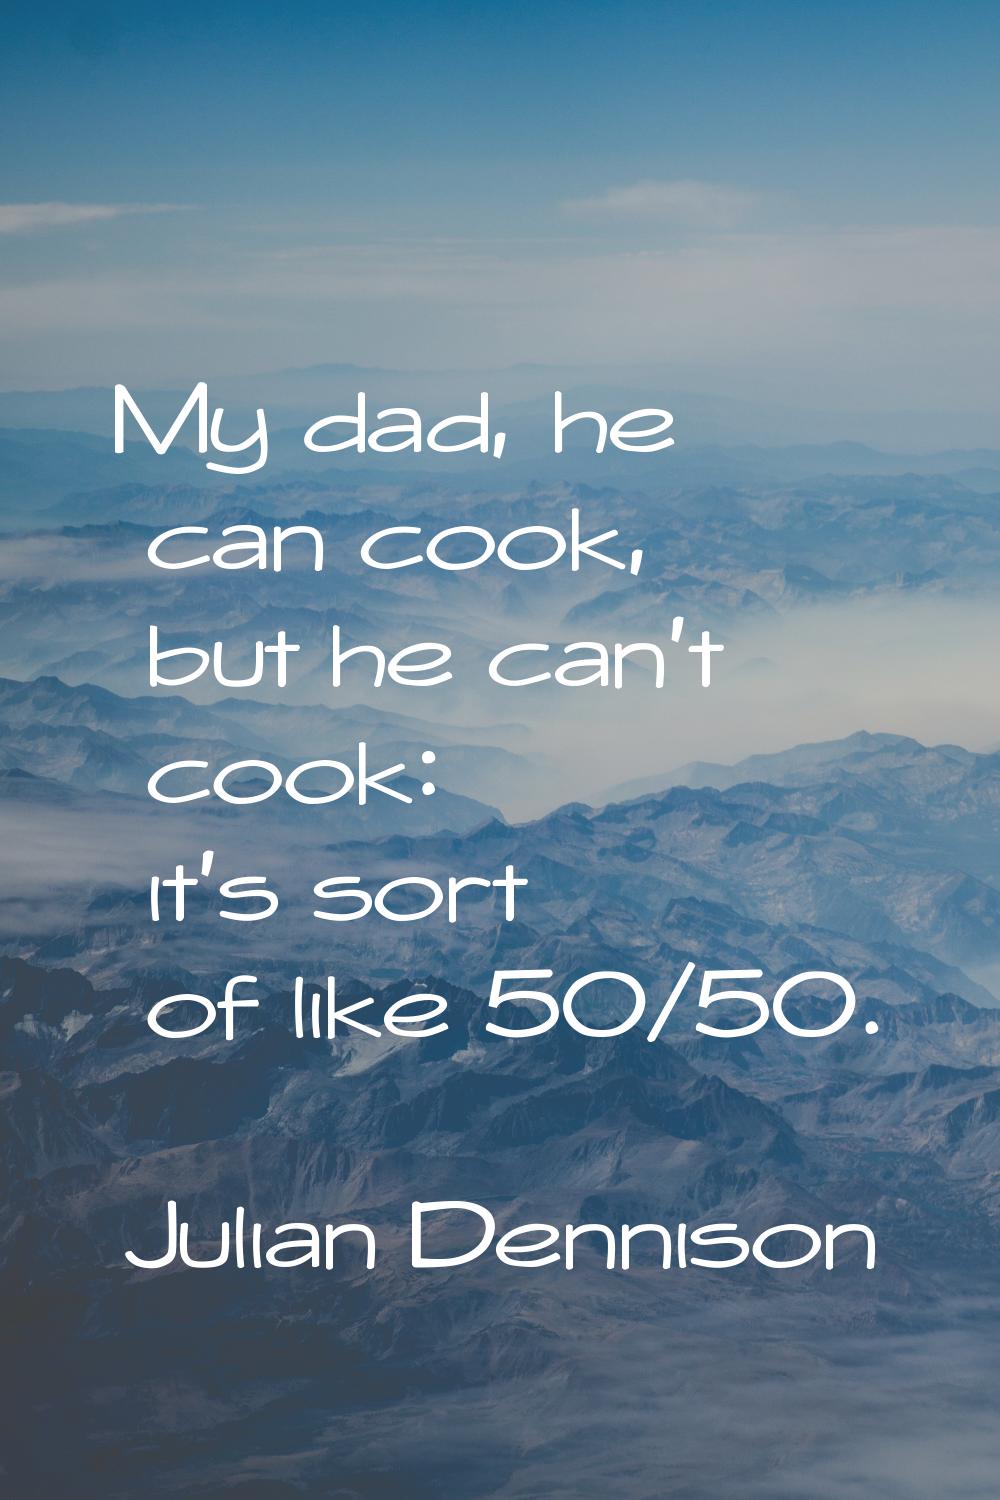 My dad, he can cook, but he can't cook: it's sort of like 50/50.